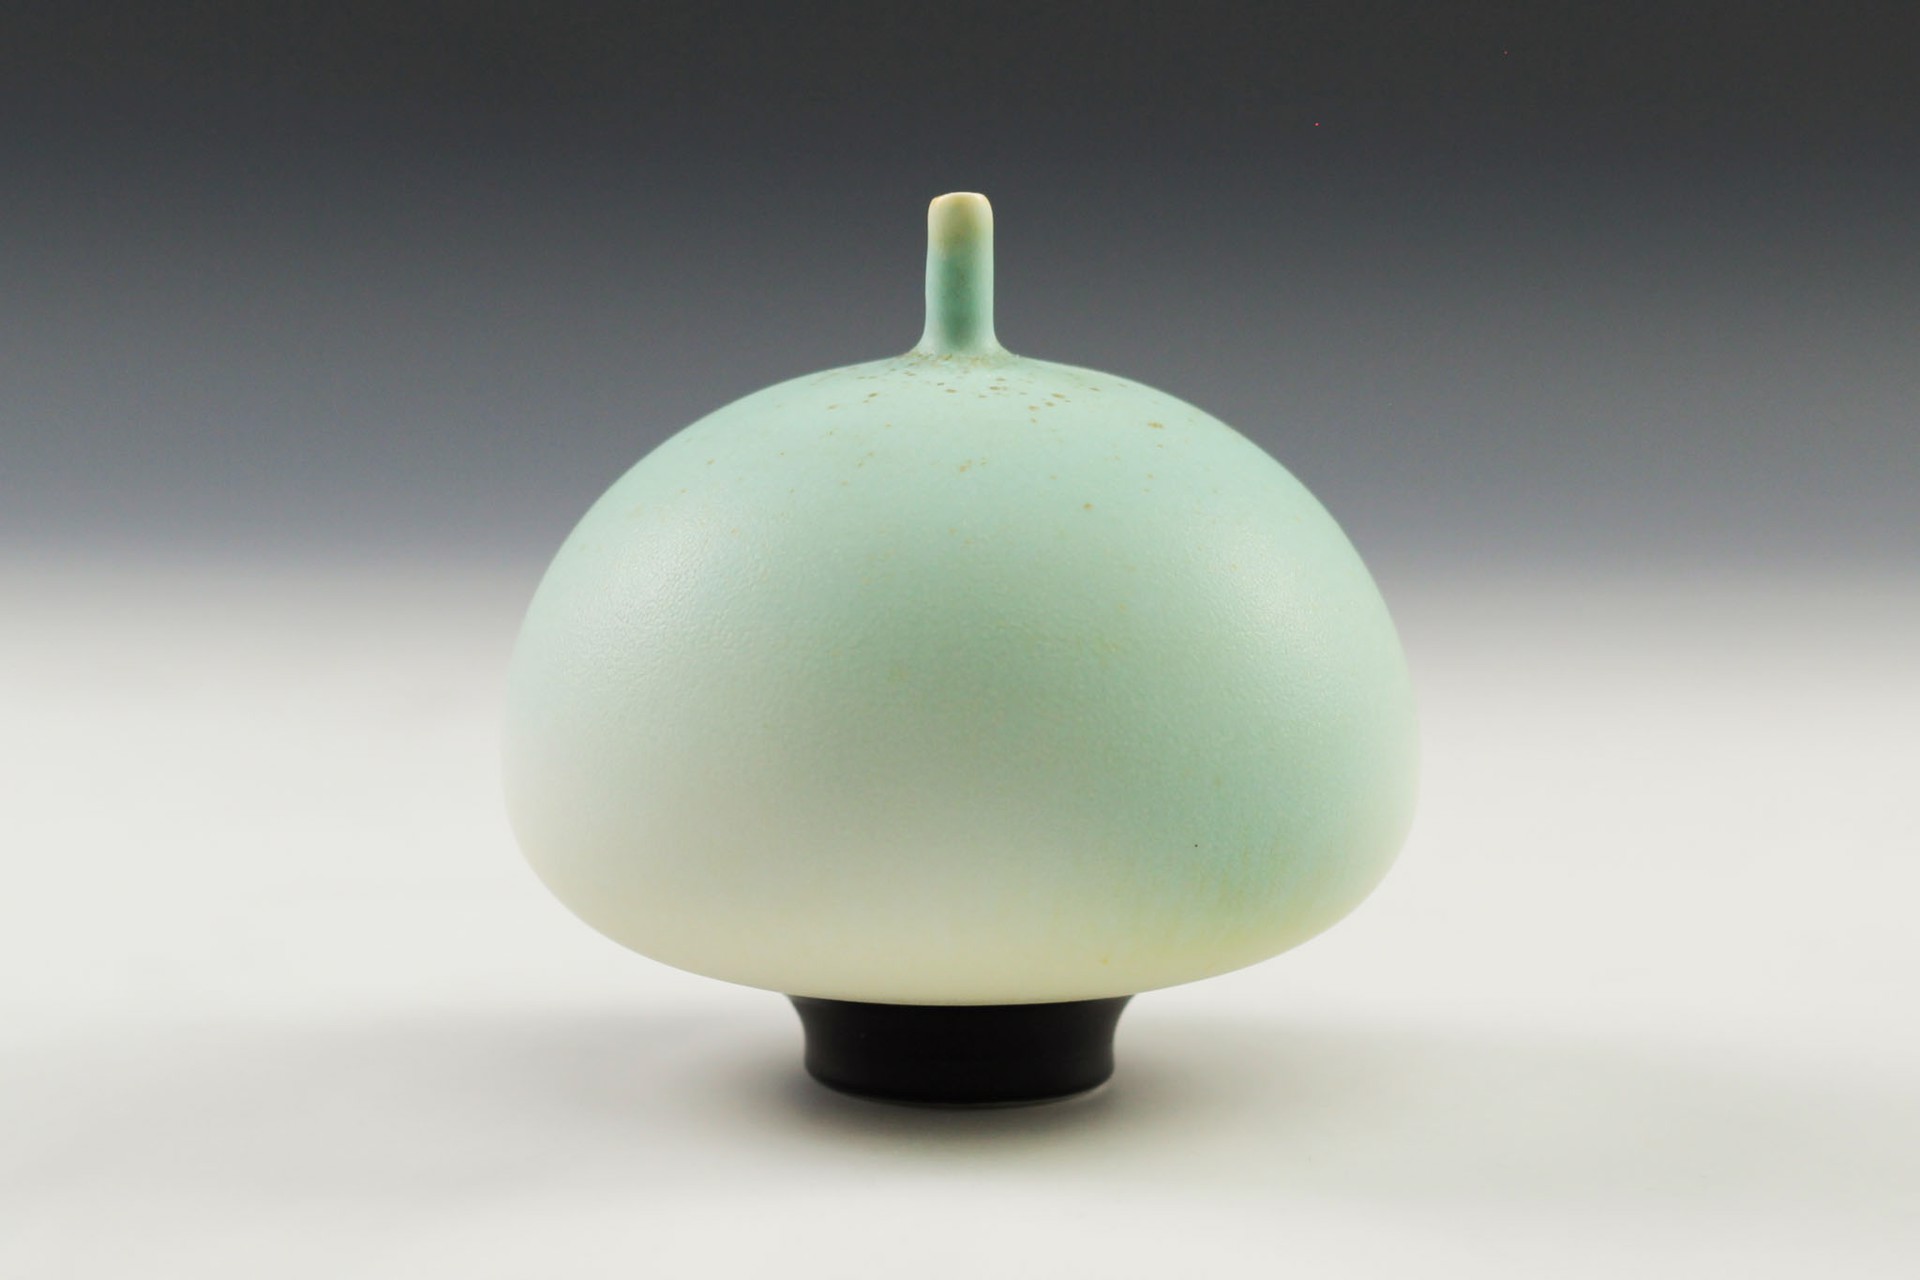 Aqua Bulb by Charlie Olson